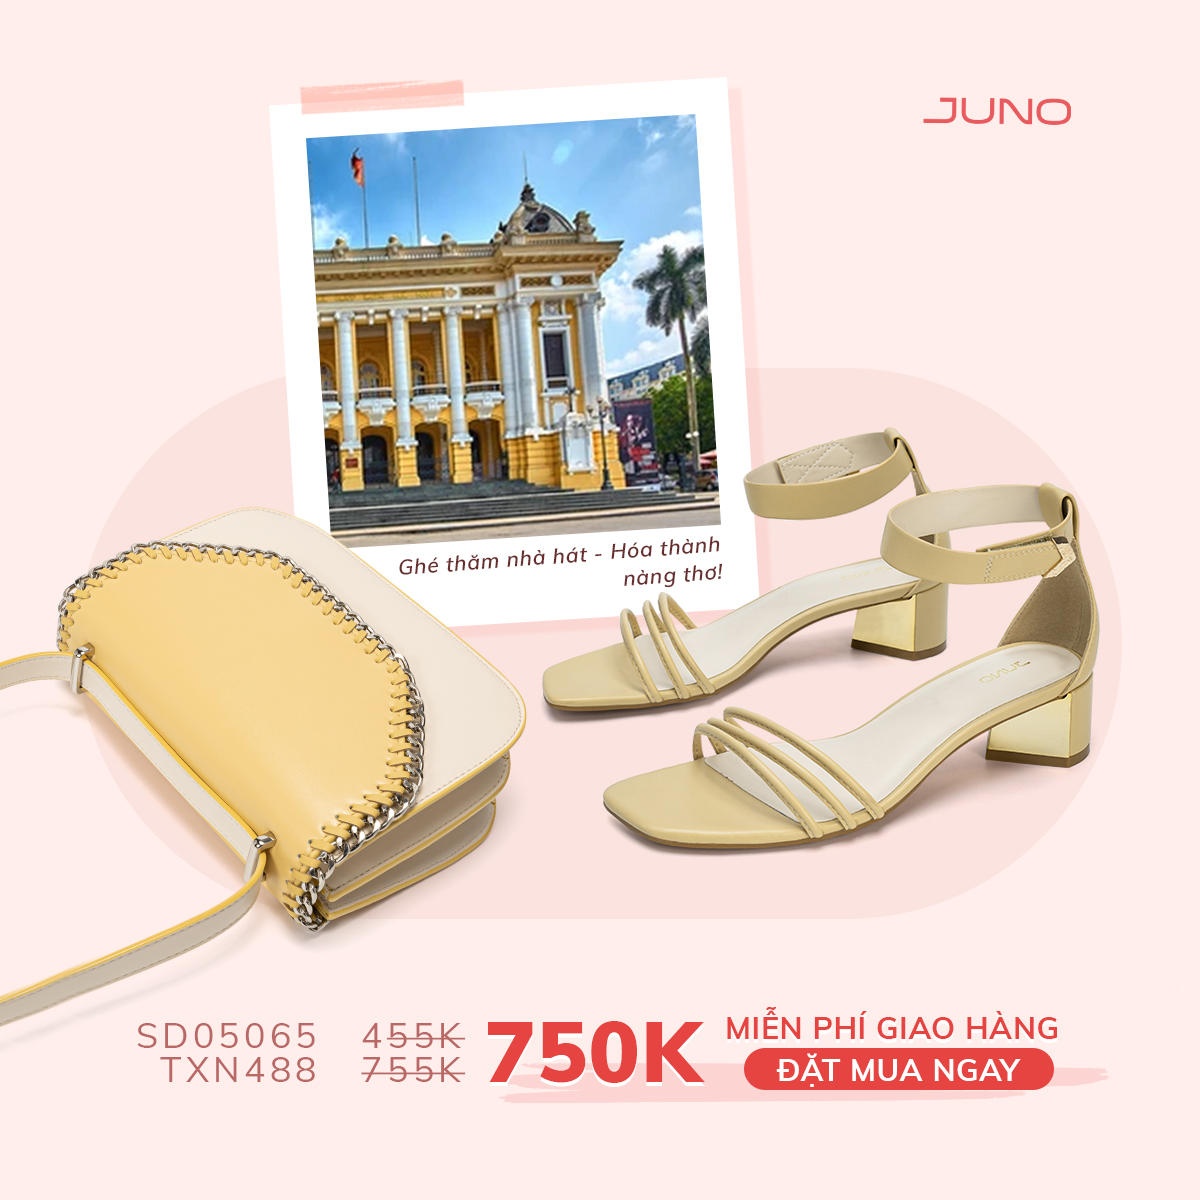 Top 8 cửa hàng giày dép đẹp nhất ở Hà Nội -  Giày Juno